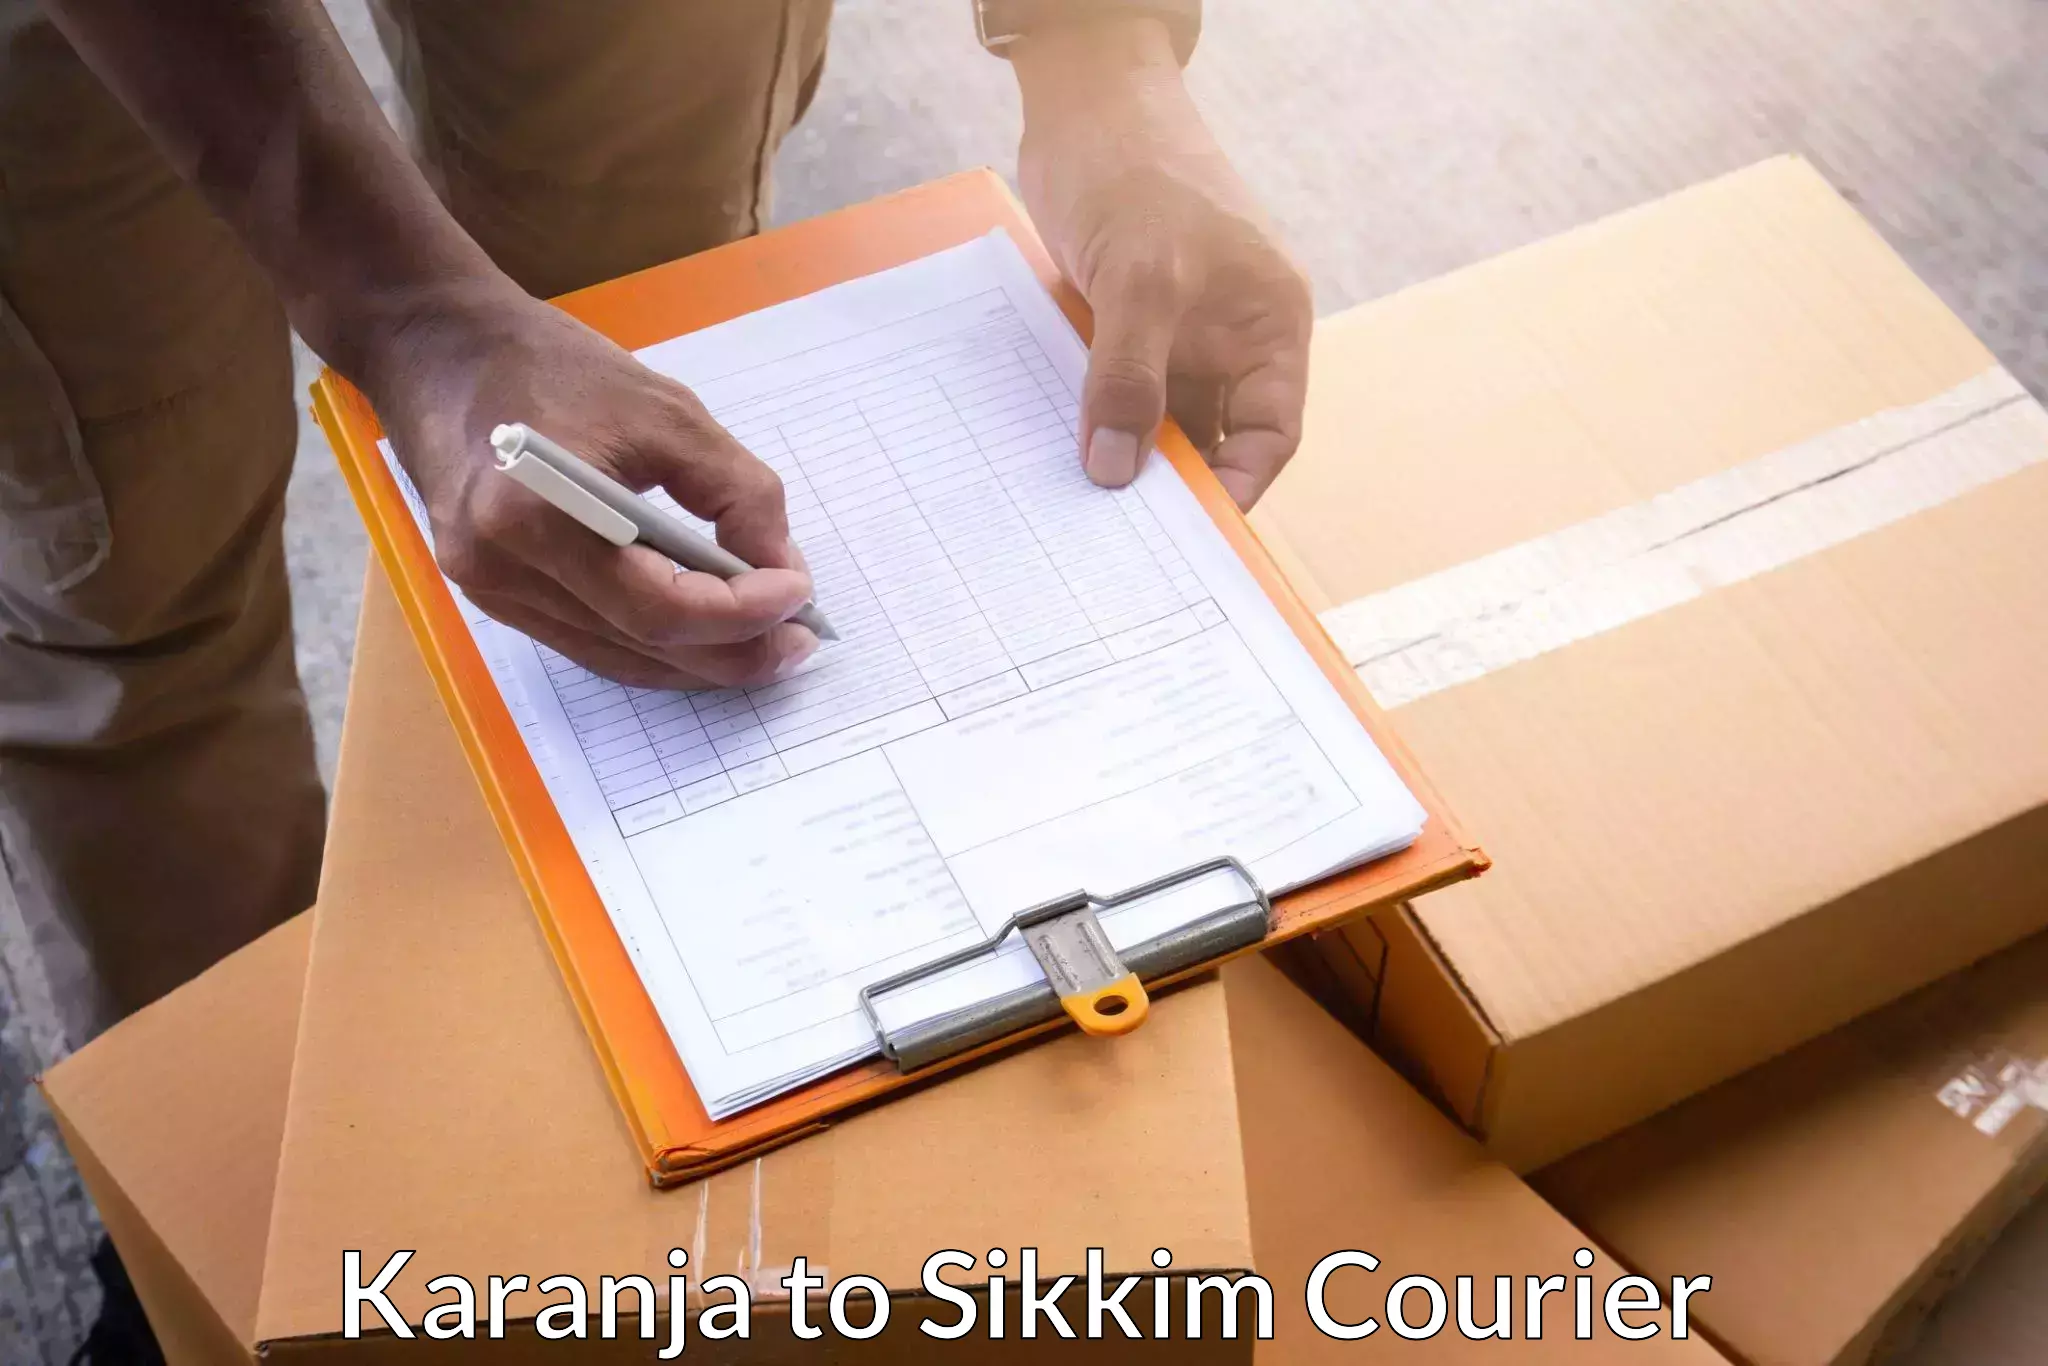 Express courier facilities in Karanja to Singtam